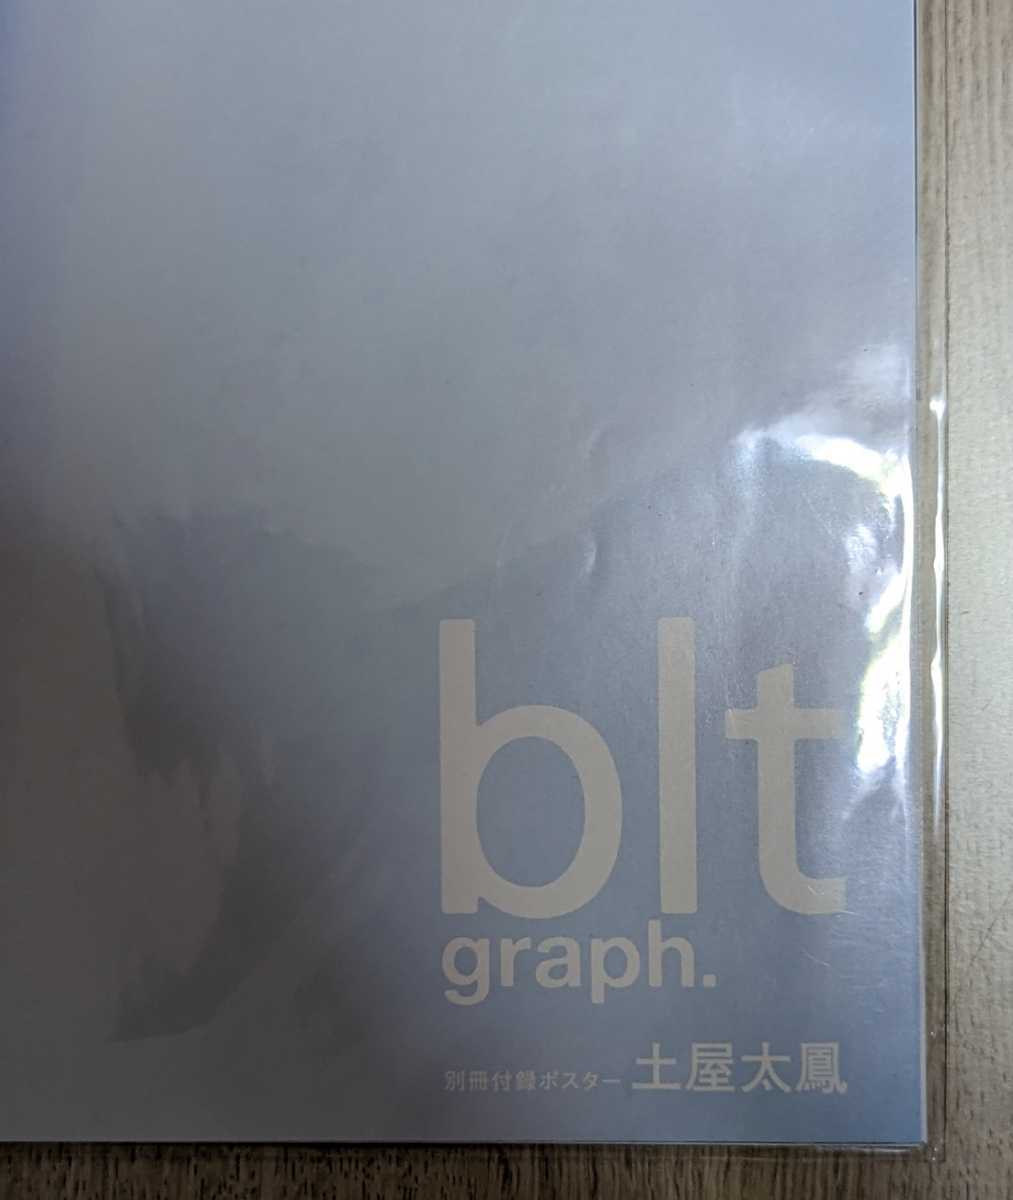 【未開封】土屋太鳳 blt graph. Vol.11　ポスター3種セット _画像2